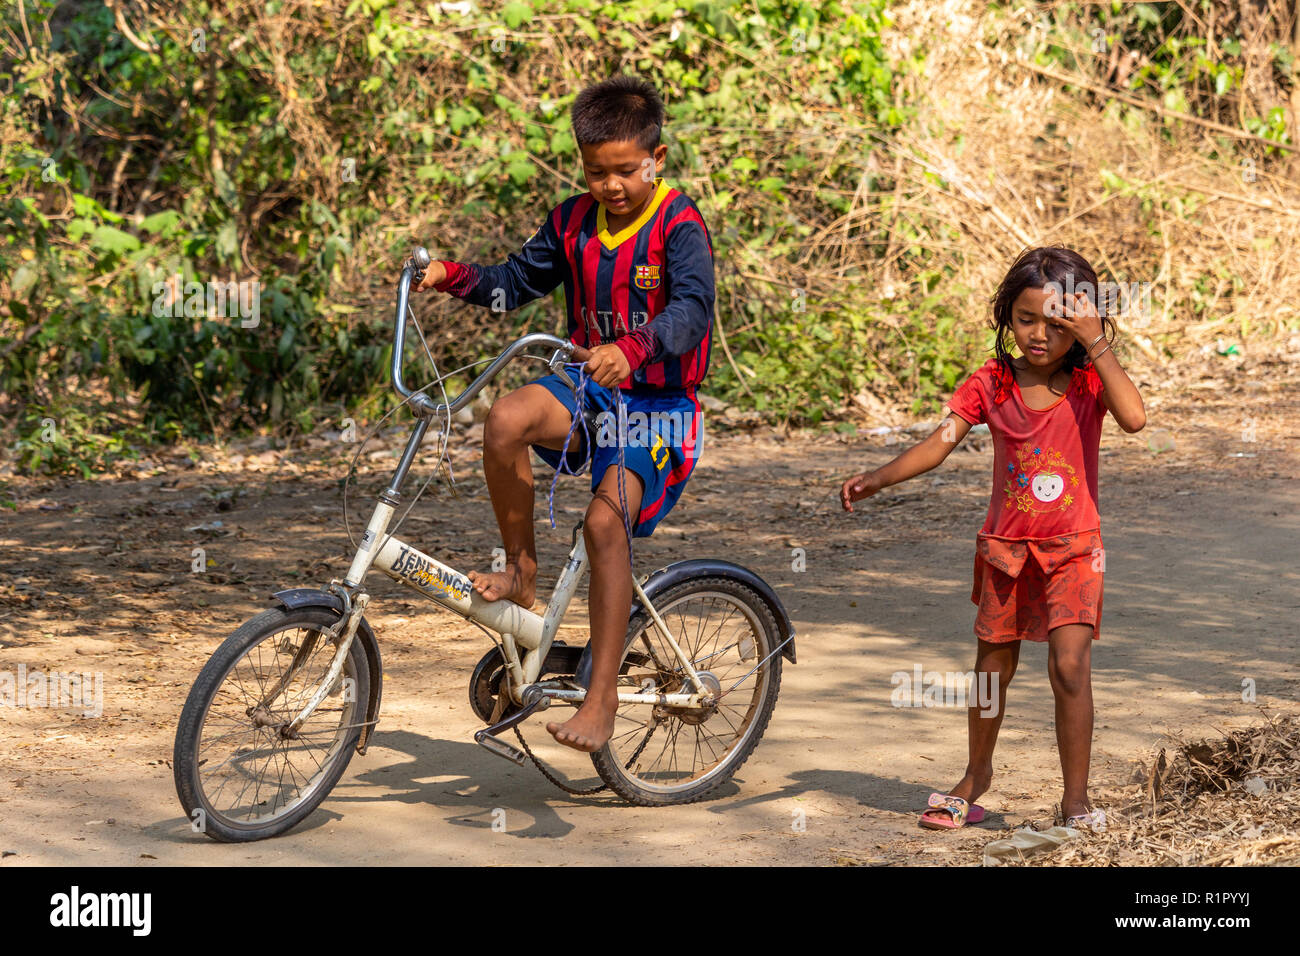 Don Det, Laos - Aprile 22, 2018: Ragazza aiutando un ragazzo a guidare una bicicletta su un percorso in un remoto villaggio del sud Laos Foto Stock